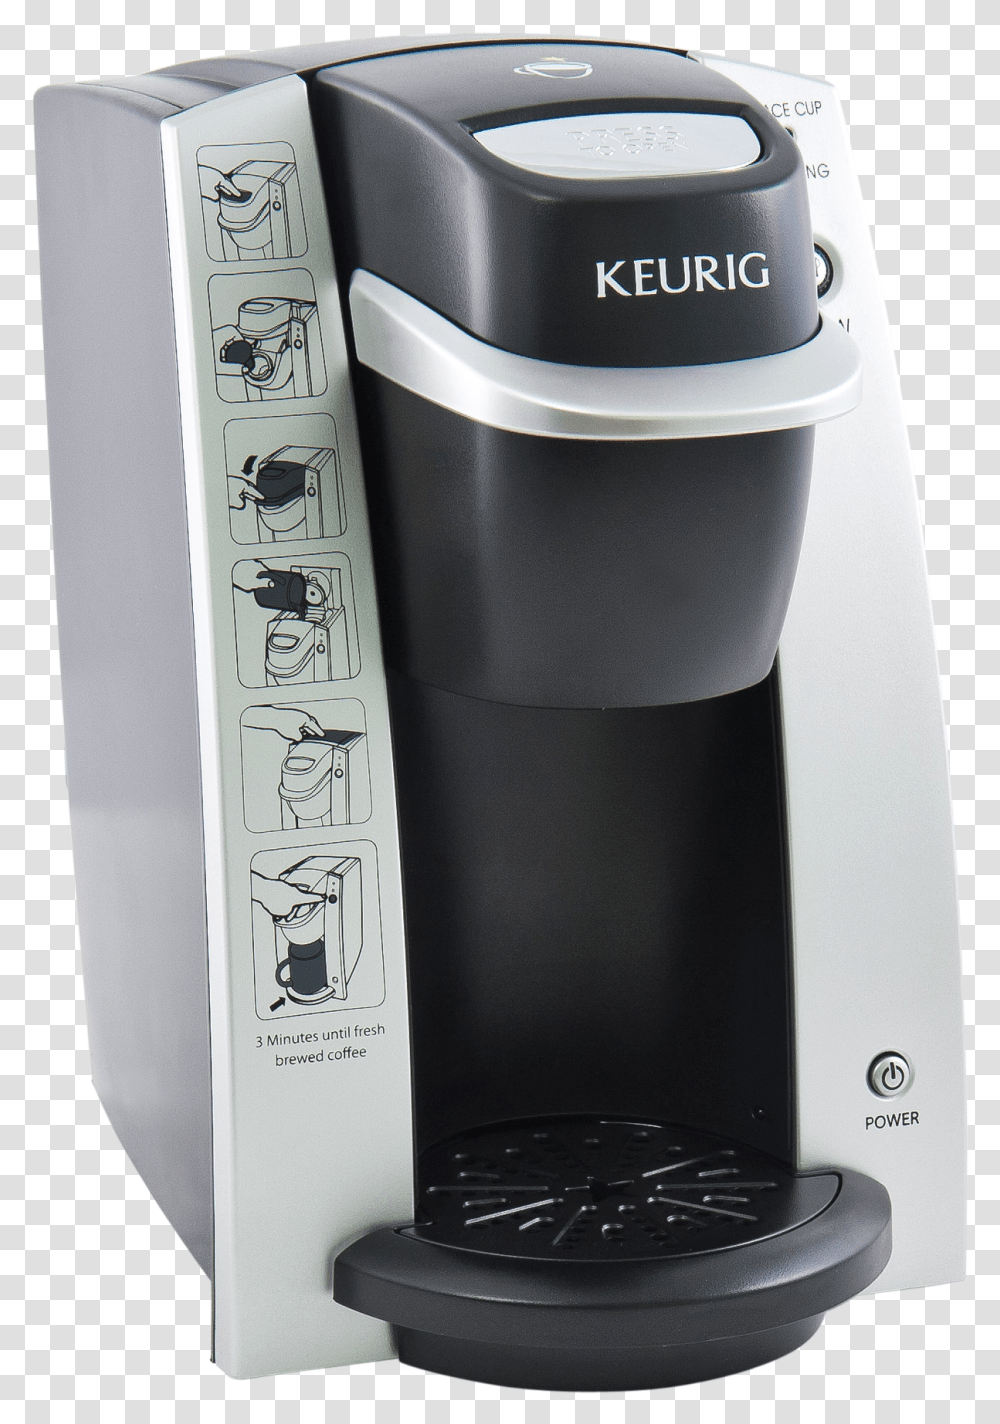 Keurig Coffee Maker, Shaker, Bottle, Jar Transparent Png